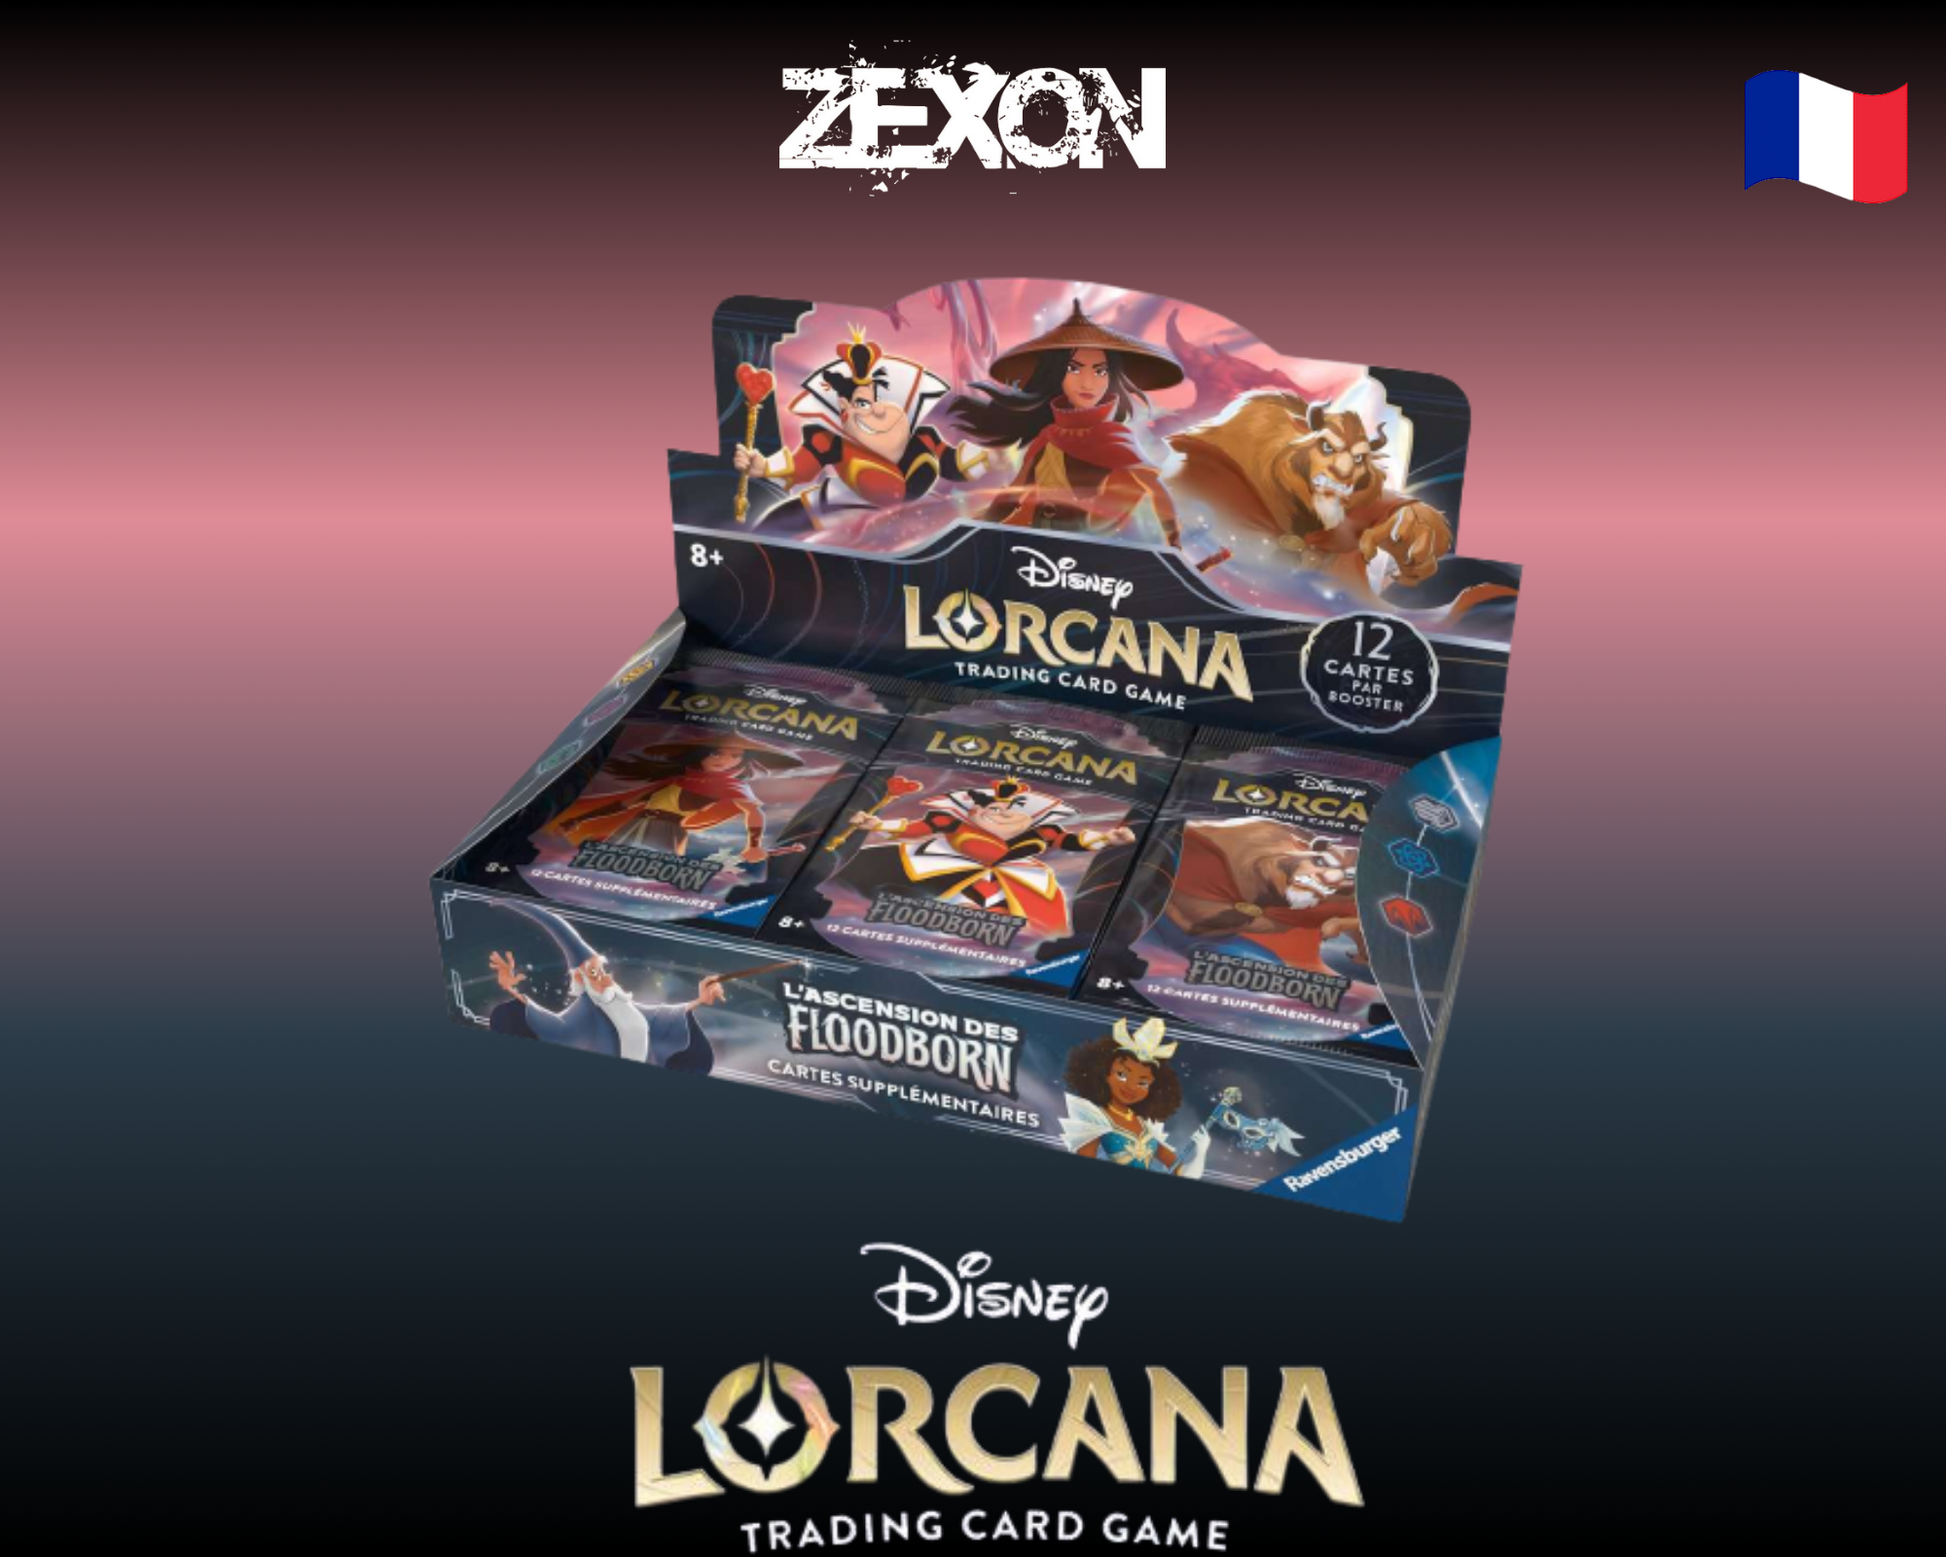 Disney Lorcana set2: Boosters display 24 – ZeXon